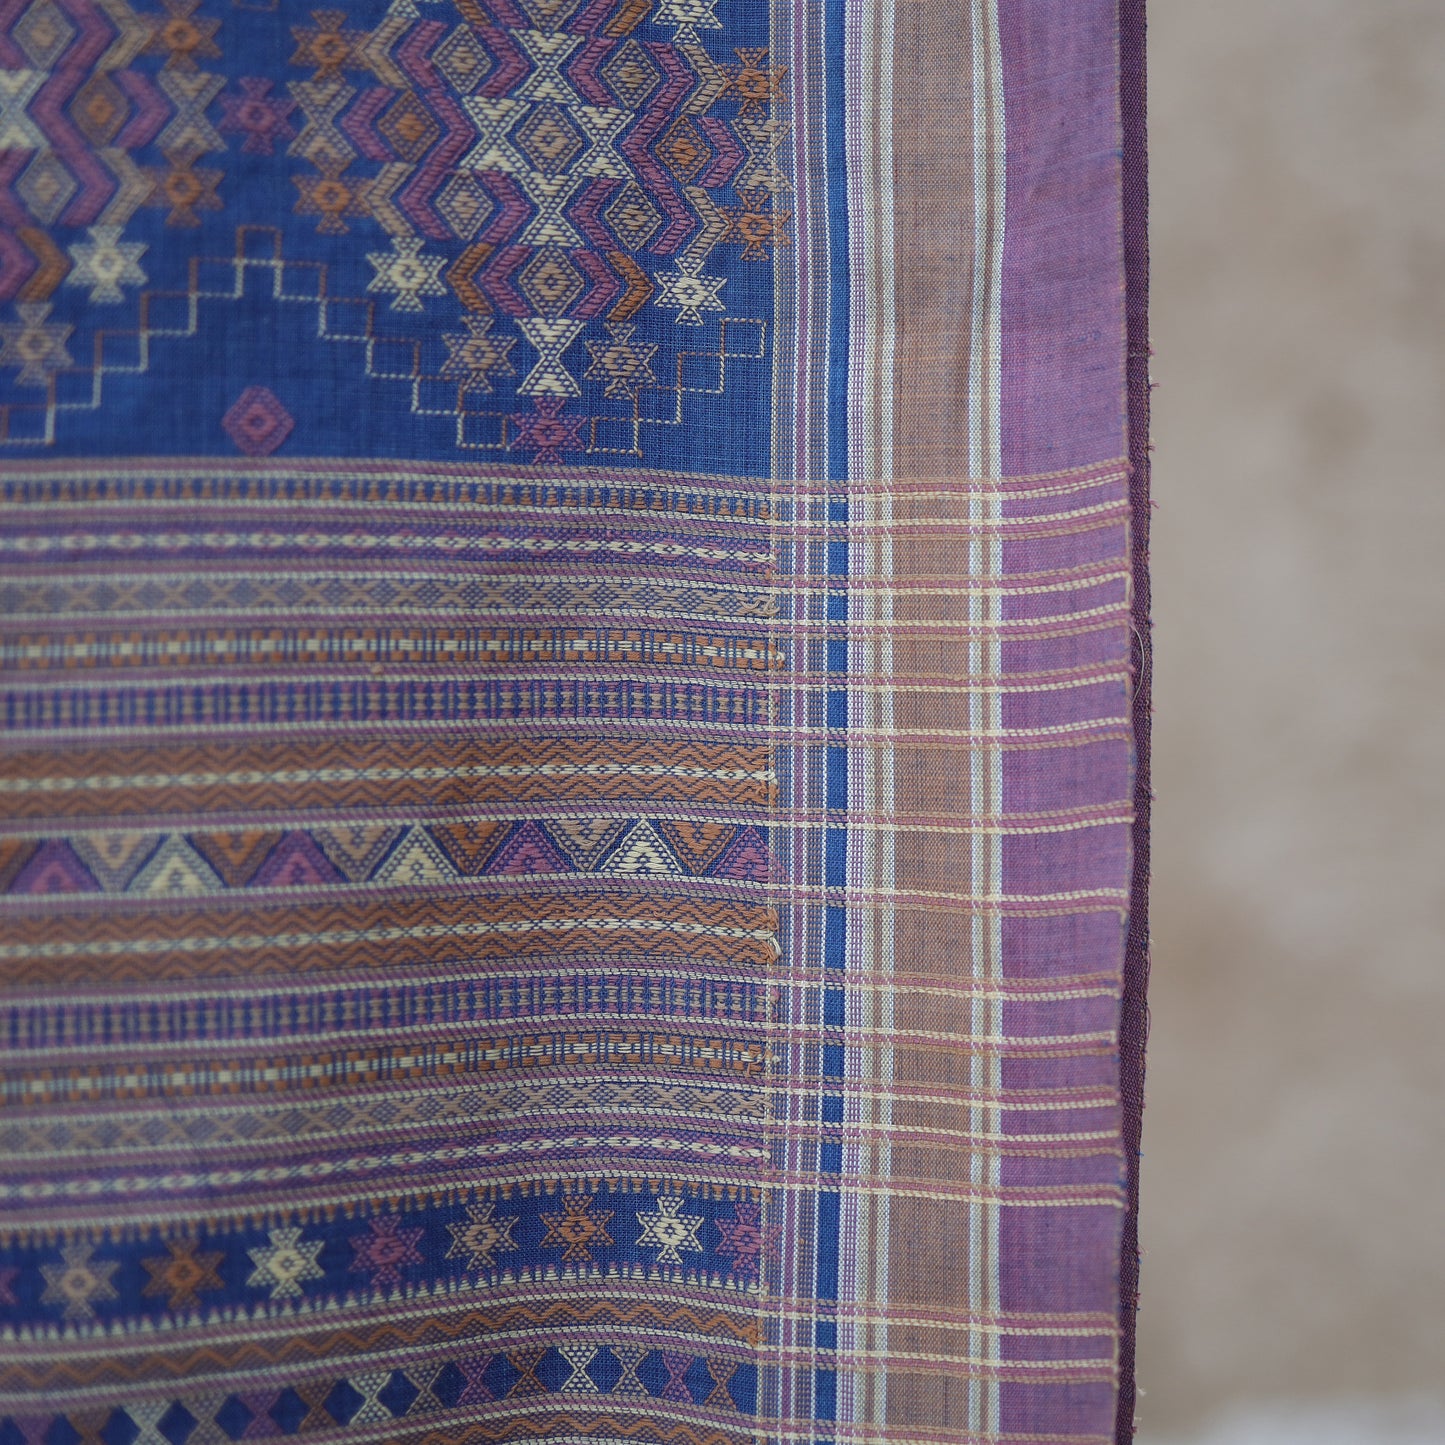 India, Vankar Vishram Valji Weaving, Shawl Handwoven in Cotton Yarns